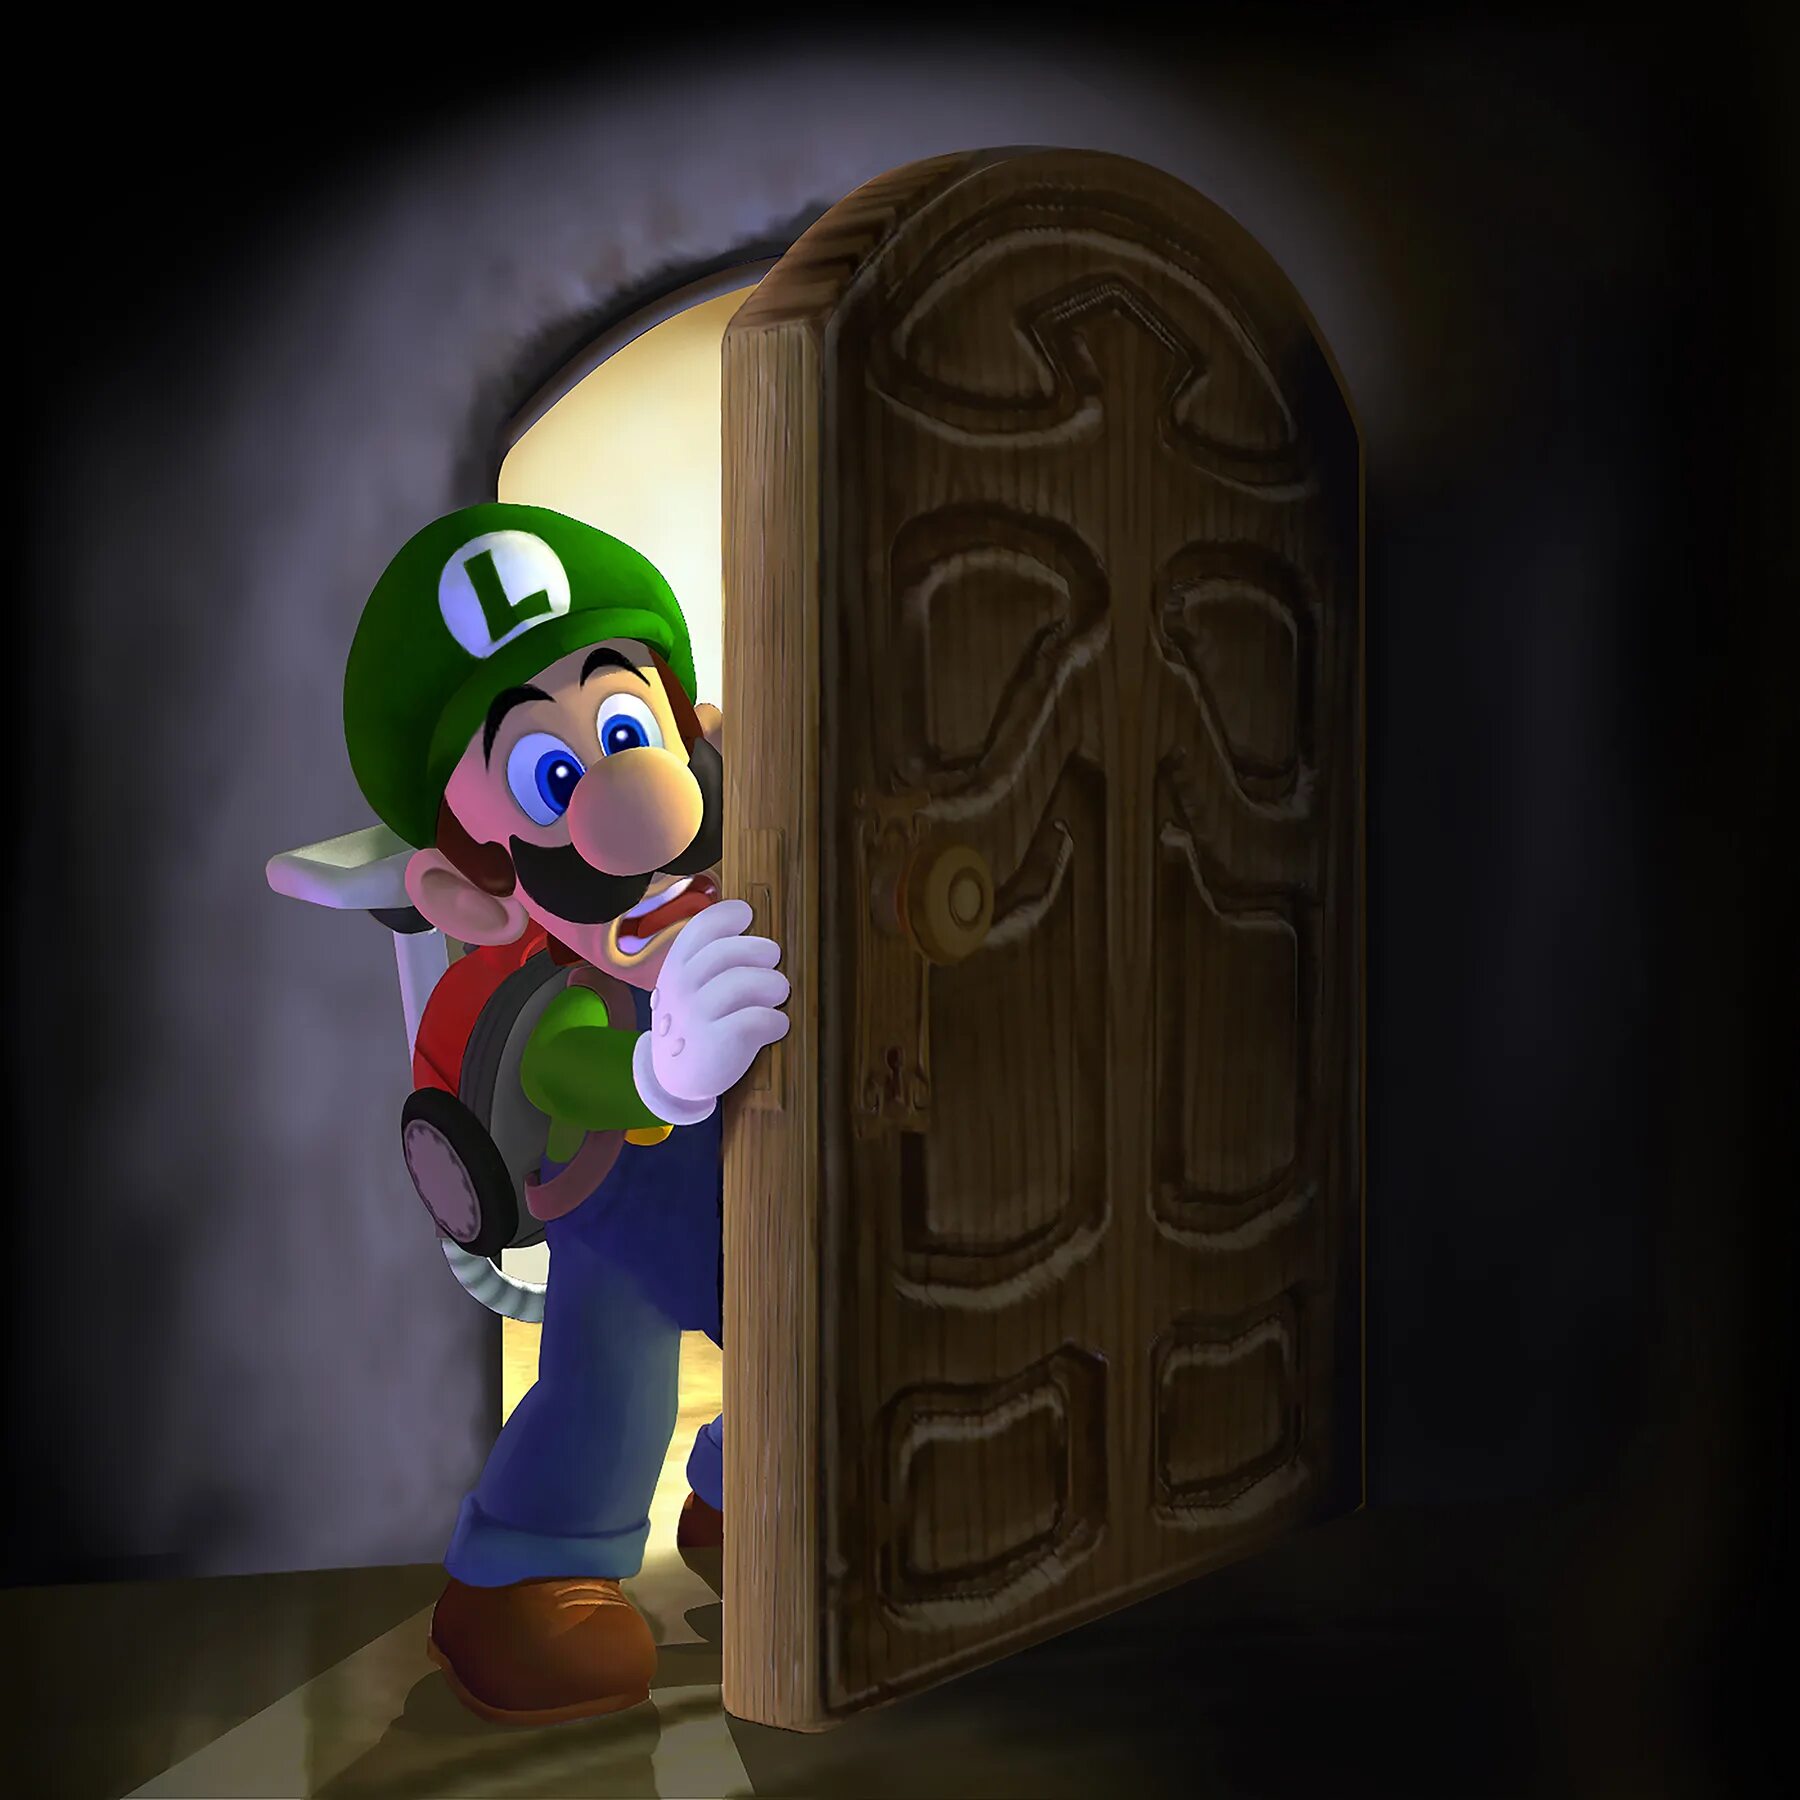 Nintendo luigi s mansion. Луиджи Мансион 1. Луиджи из Luigi s Mansion 3. Luigis Manision 1 Luigi. Luigi's Mansion [3ds].